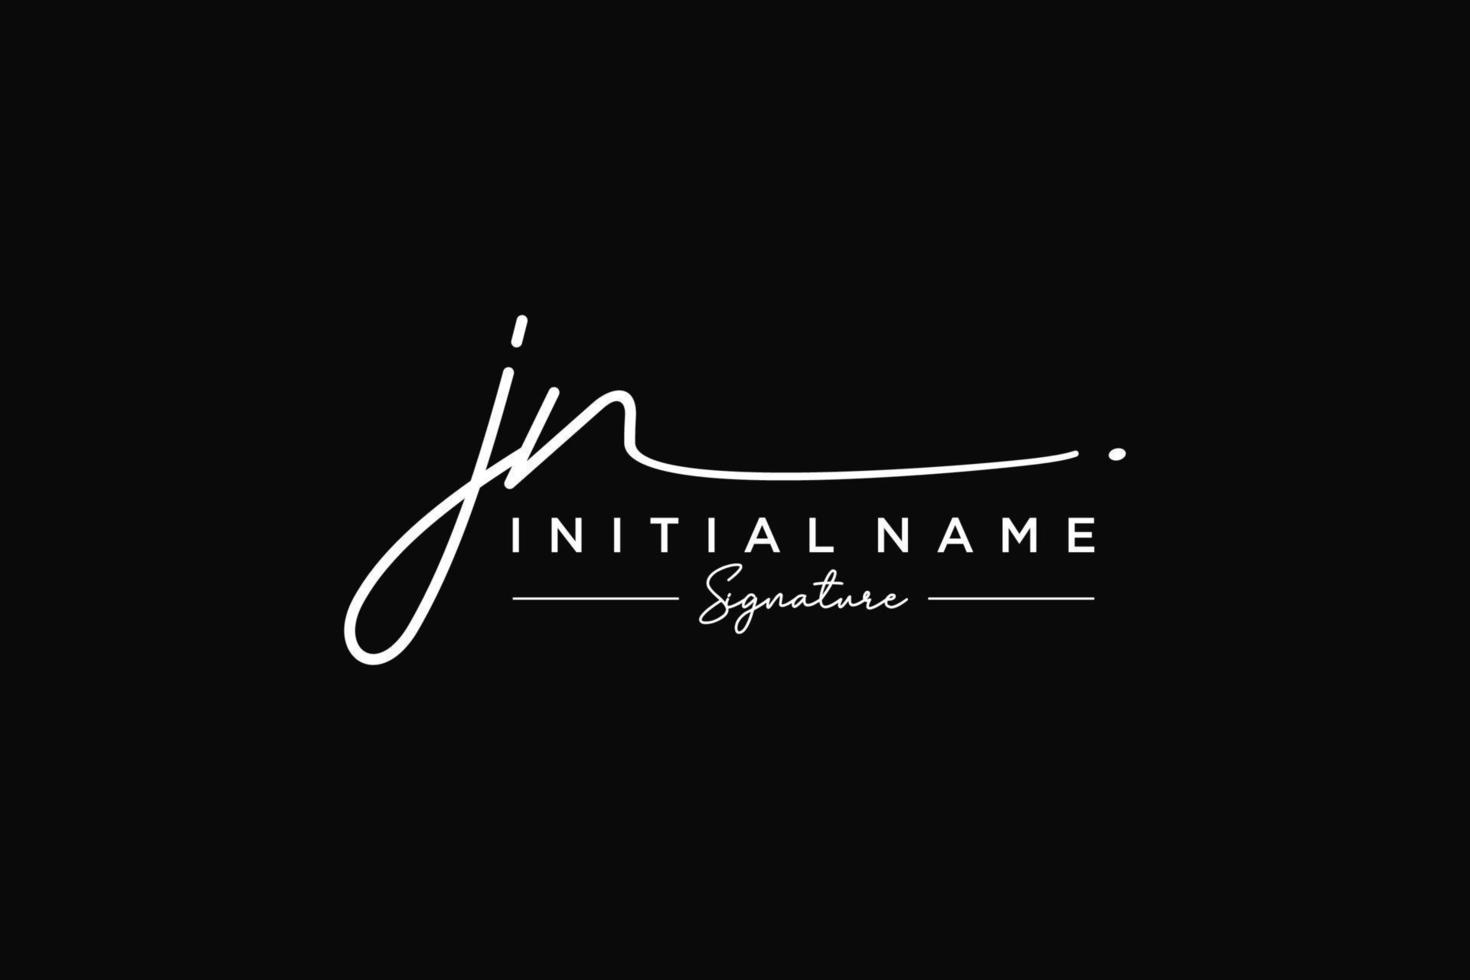 vector de plantilla de logotipo de firma jn inicial. ilustración de vector de letras de caligrafía dibujada a mano.